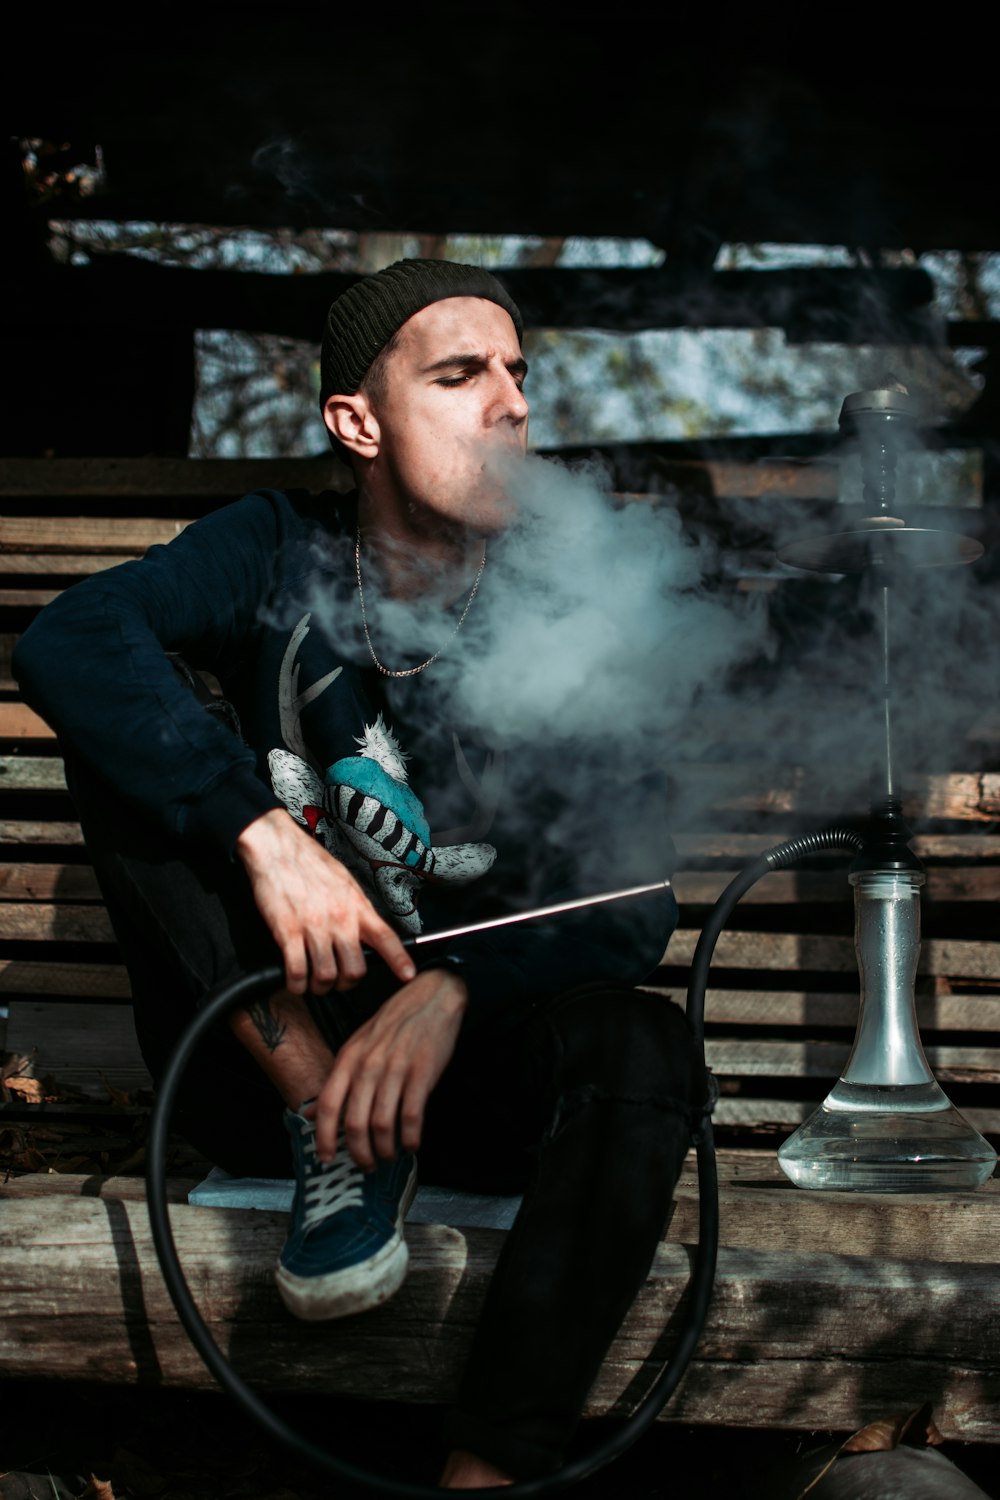 man sitting on brown bench smoking outdoors